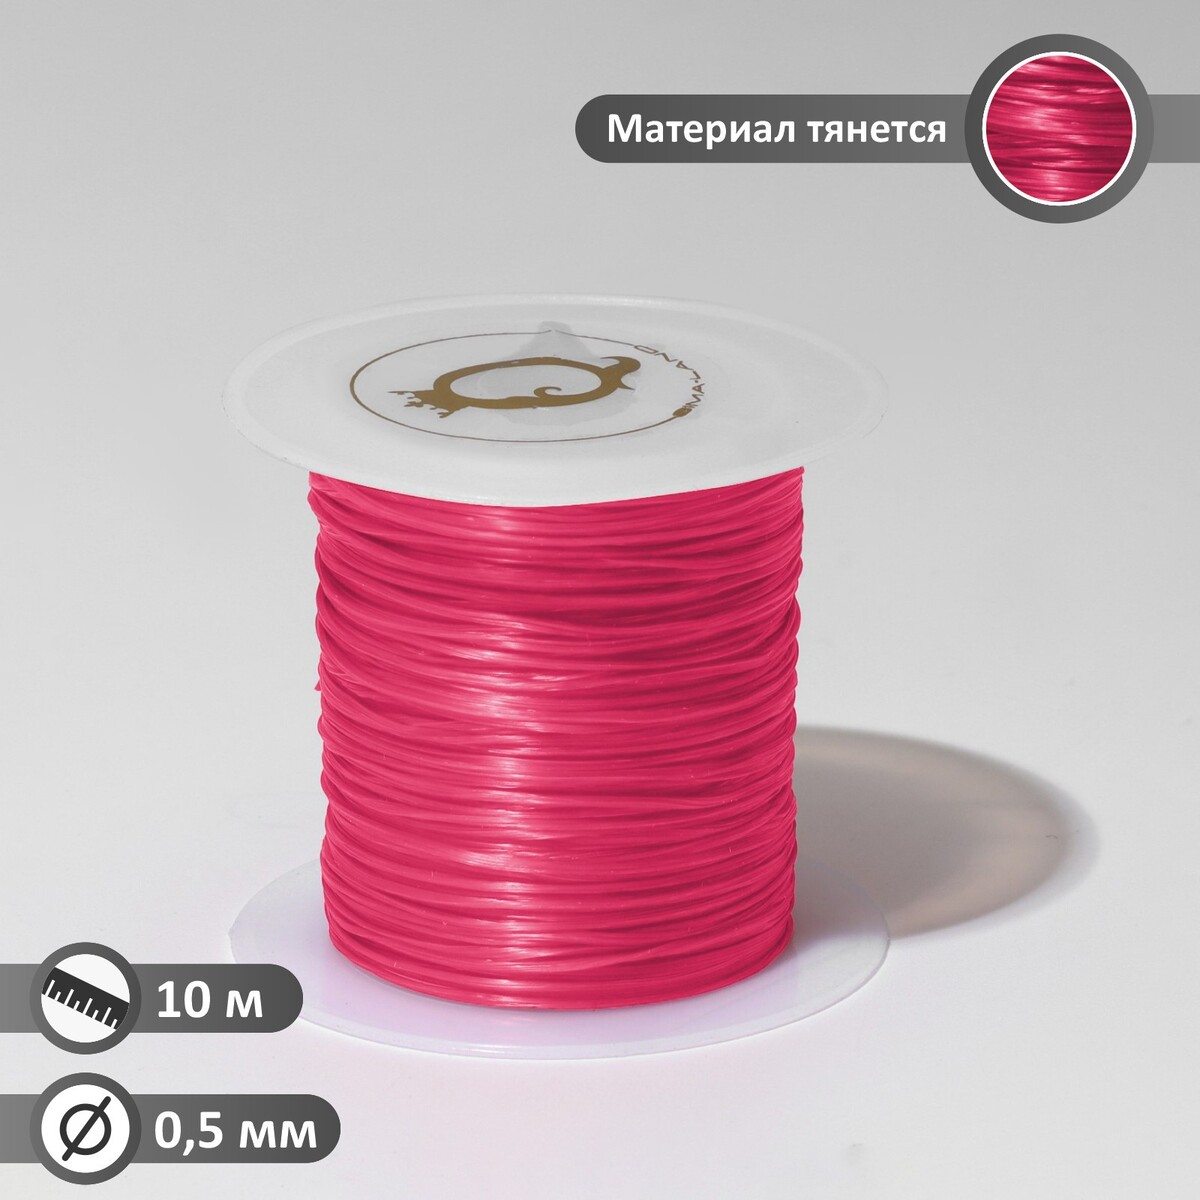 Нить силиконовая (резинка) d=0,5 мм, l=10 м (прочность 2250 денье), цвет розовый конструкционная прочность учебник